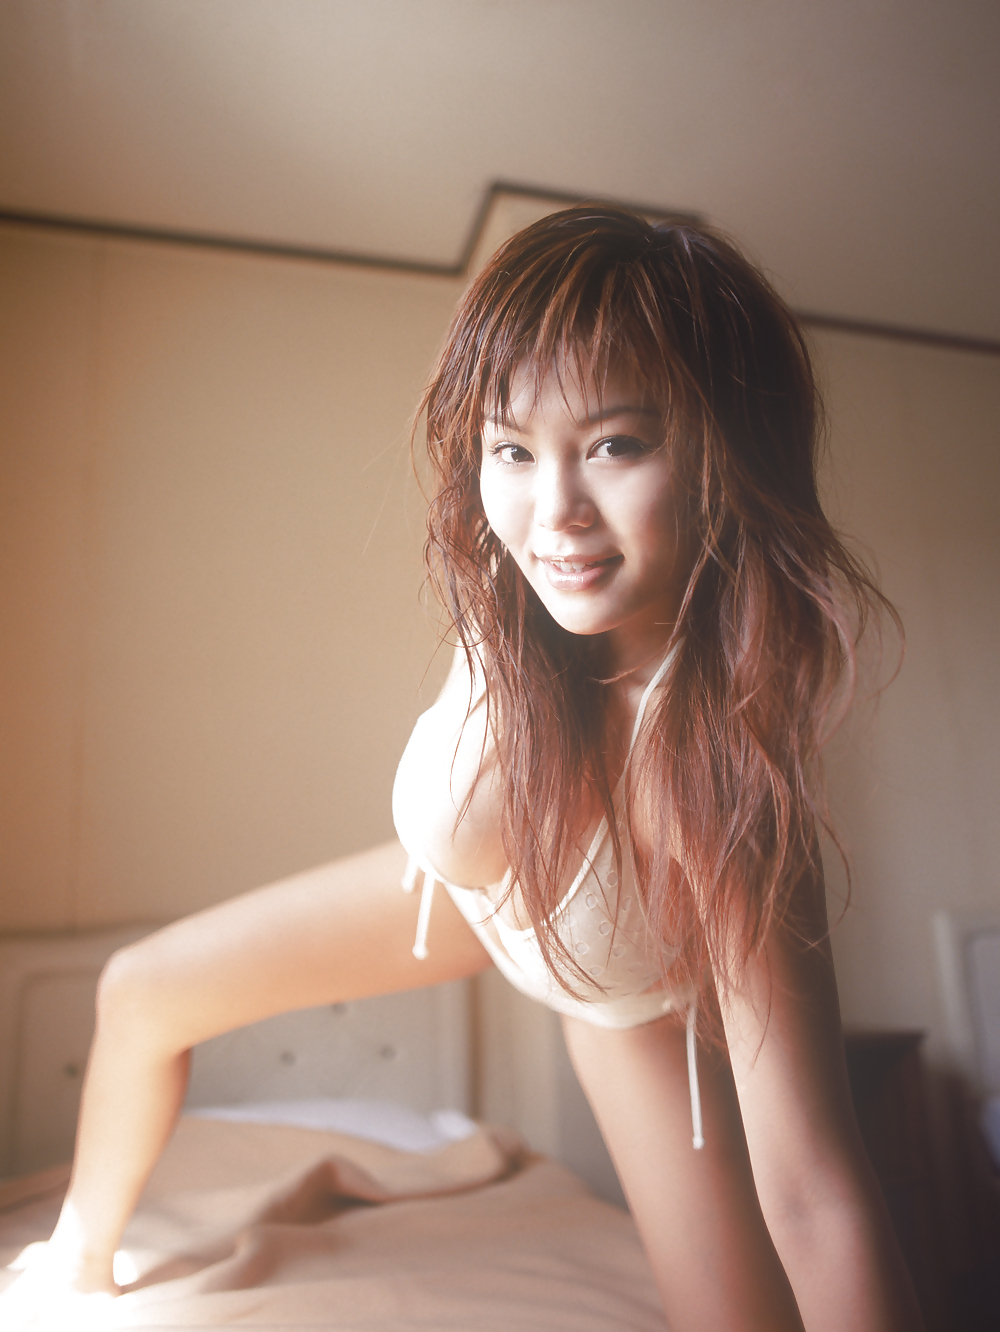 Bikini giapponese babes-yoko matsugane (3)
 #5050947